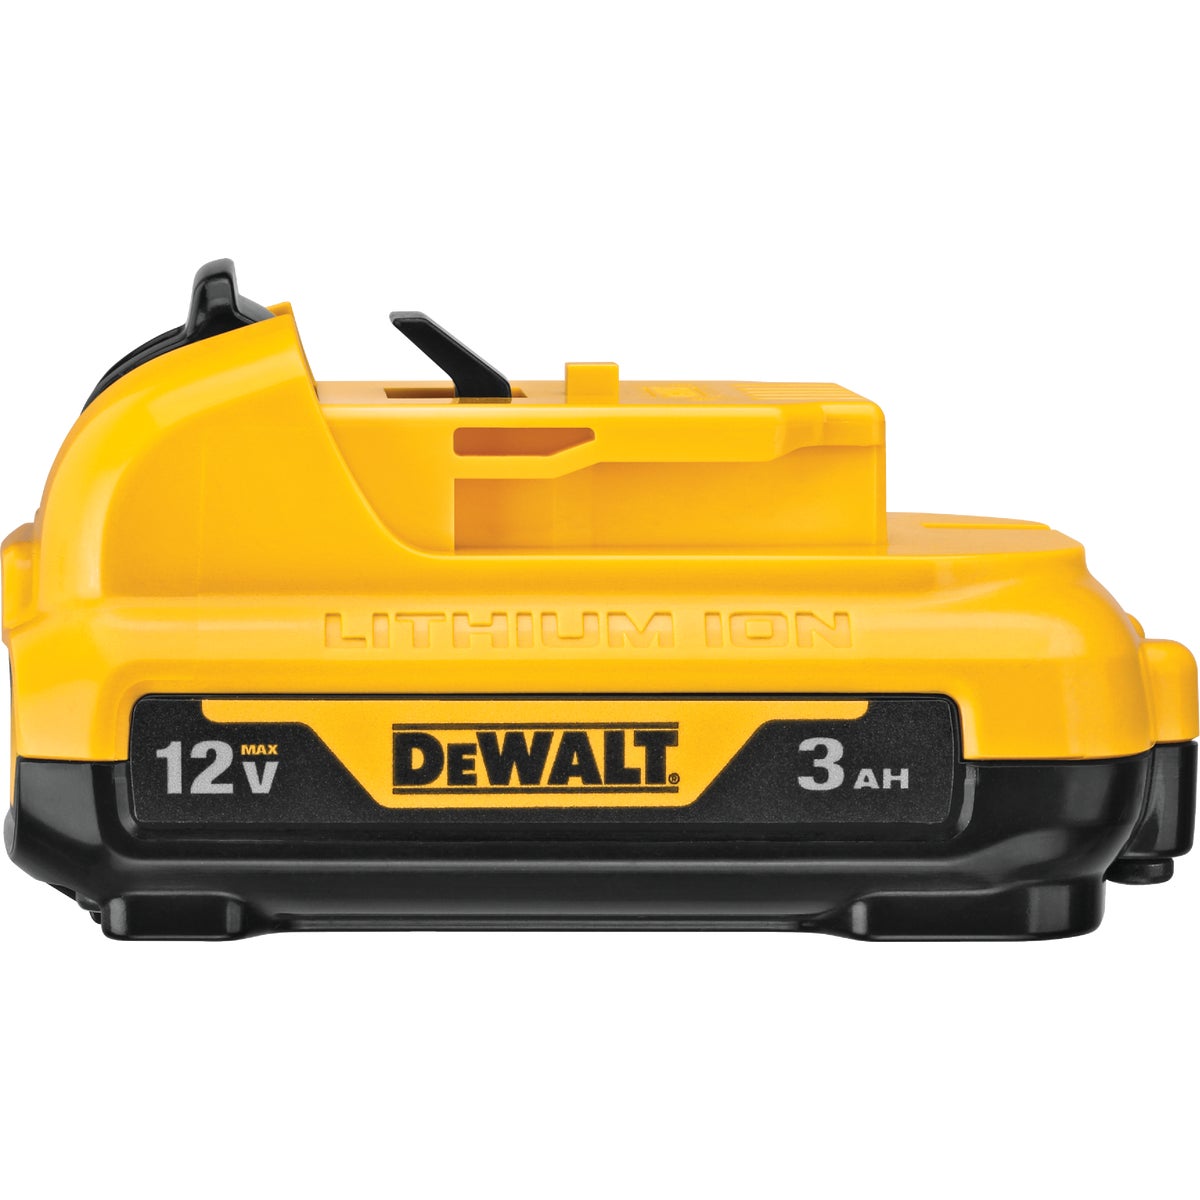 DEWALT 12 Volt MAX Lithium-Ion 3.0 Ah Tool Battery